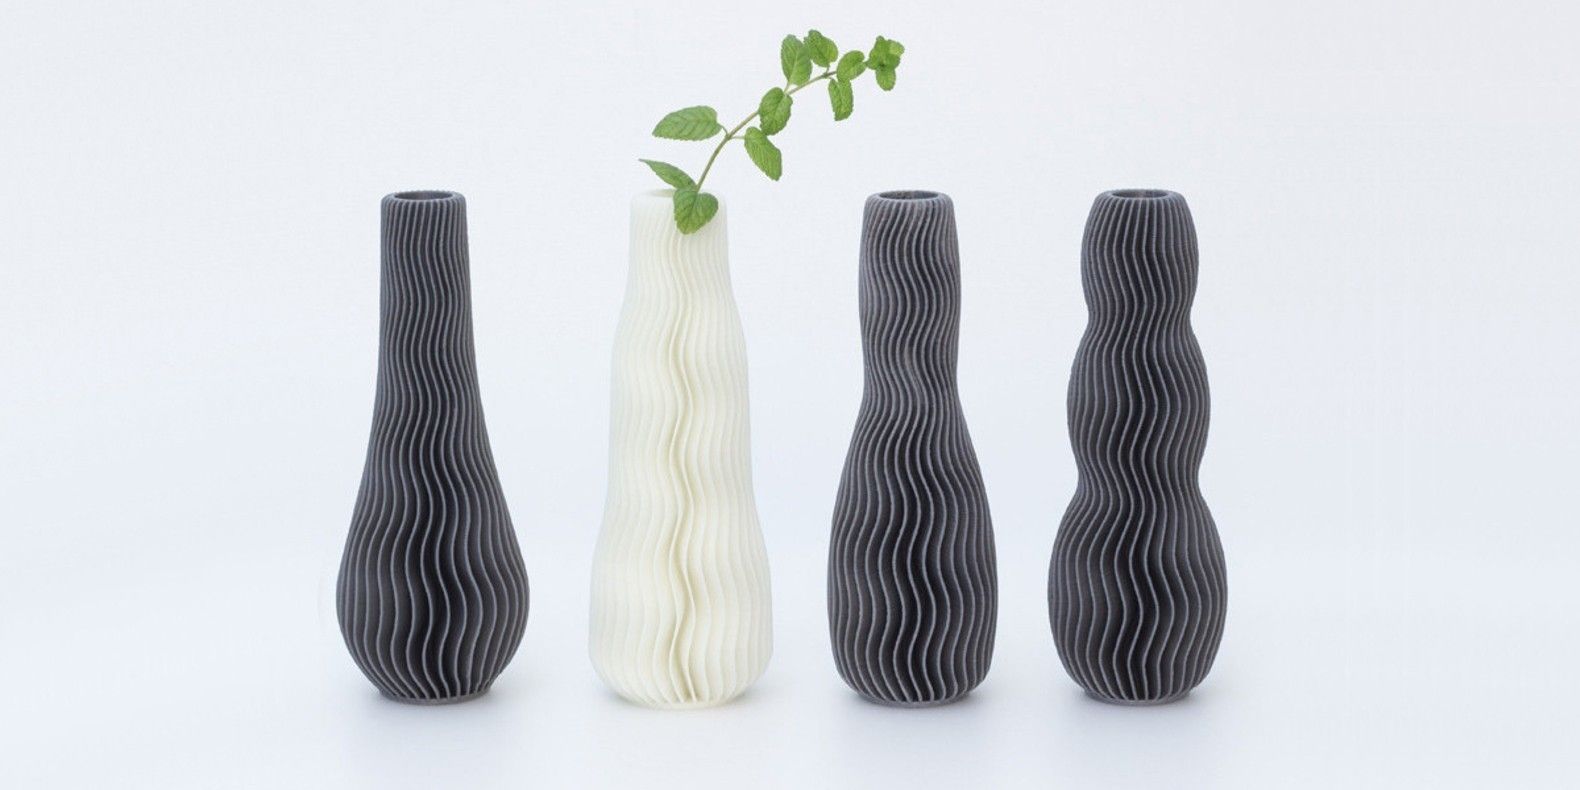 Откройте для себя в этой новой коллекции 3D-принтера модели ваз.